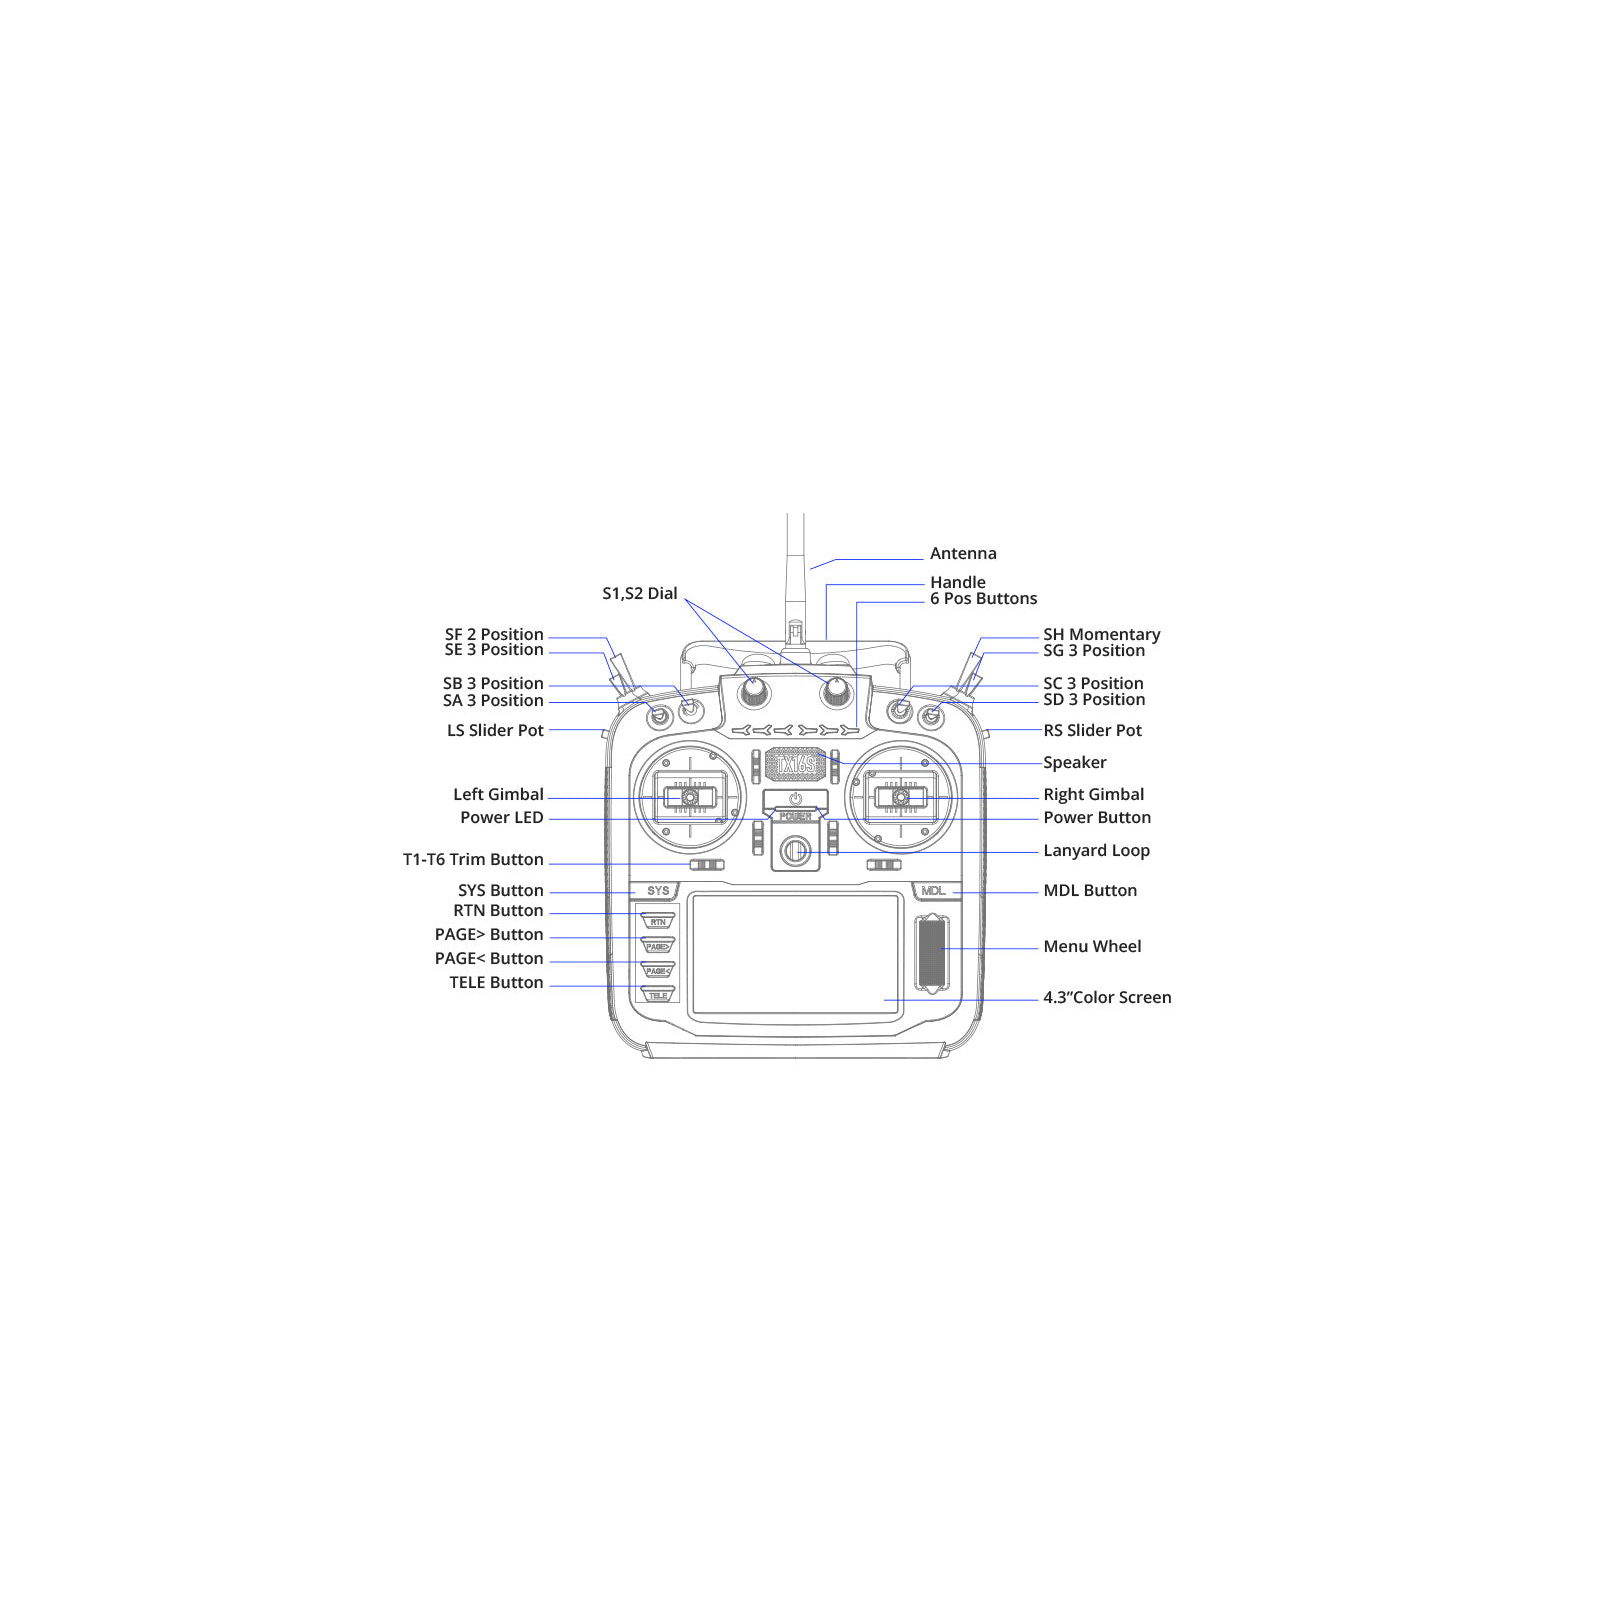 Пульт управления для дрона RadioMaster TX16S MKII AG01 Gimbal ELRS (HP0157.0022) изображение 4